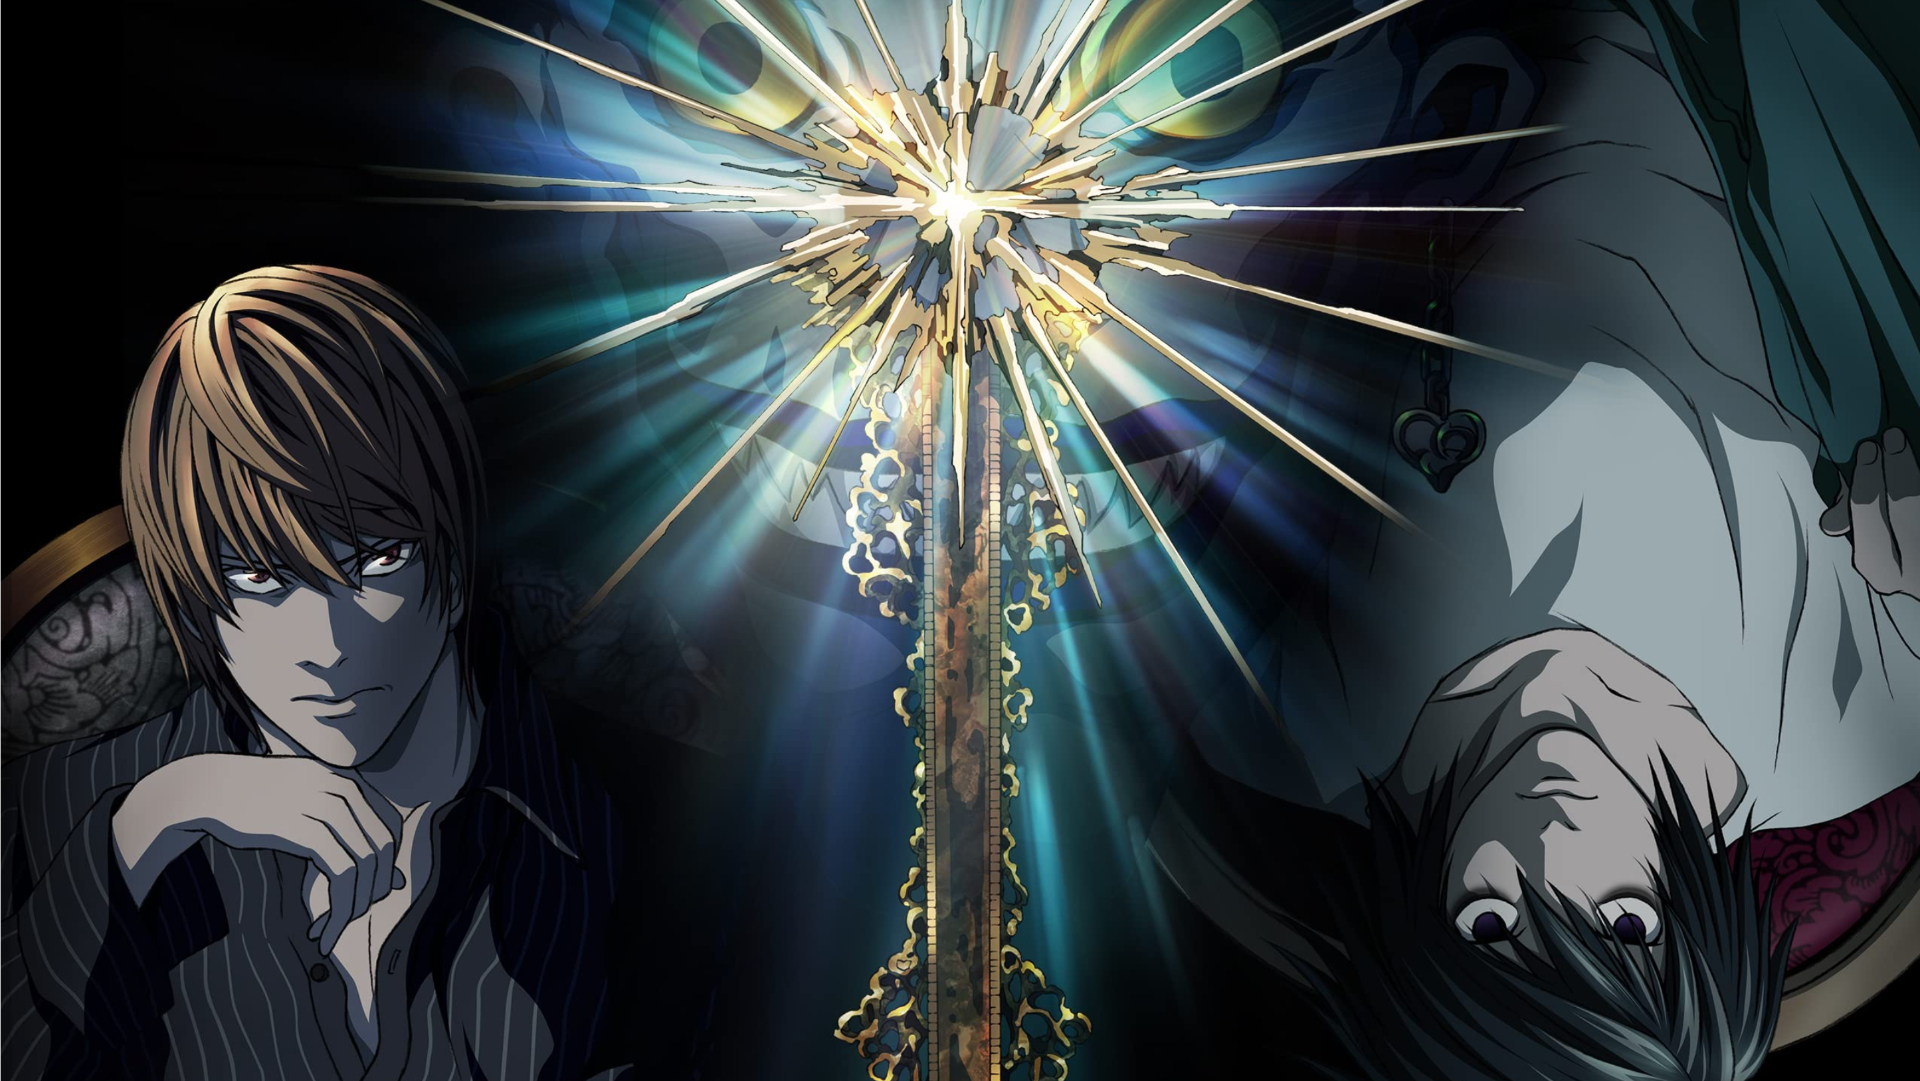 Arte chave do anime Death Note com Light e L em lados opostos com Ryuk aparecendo no alto.